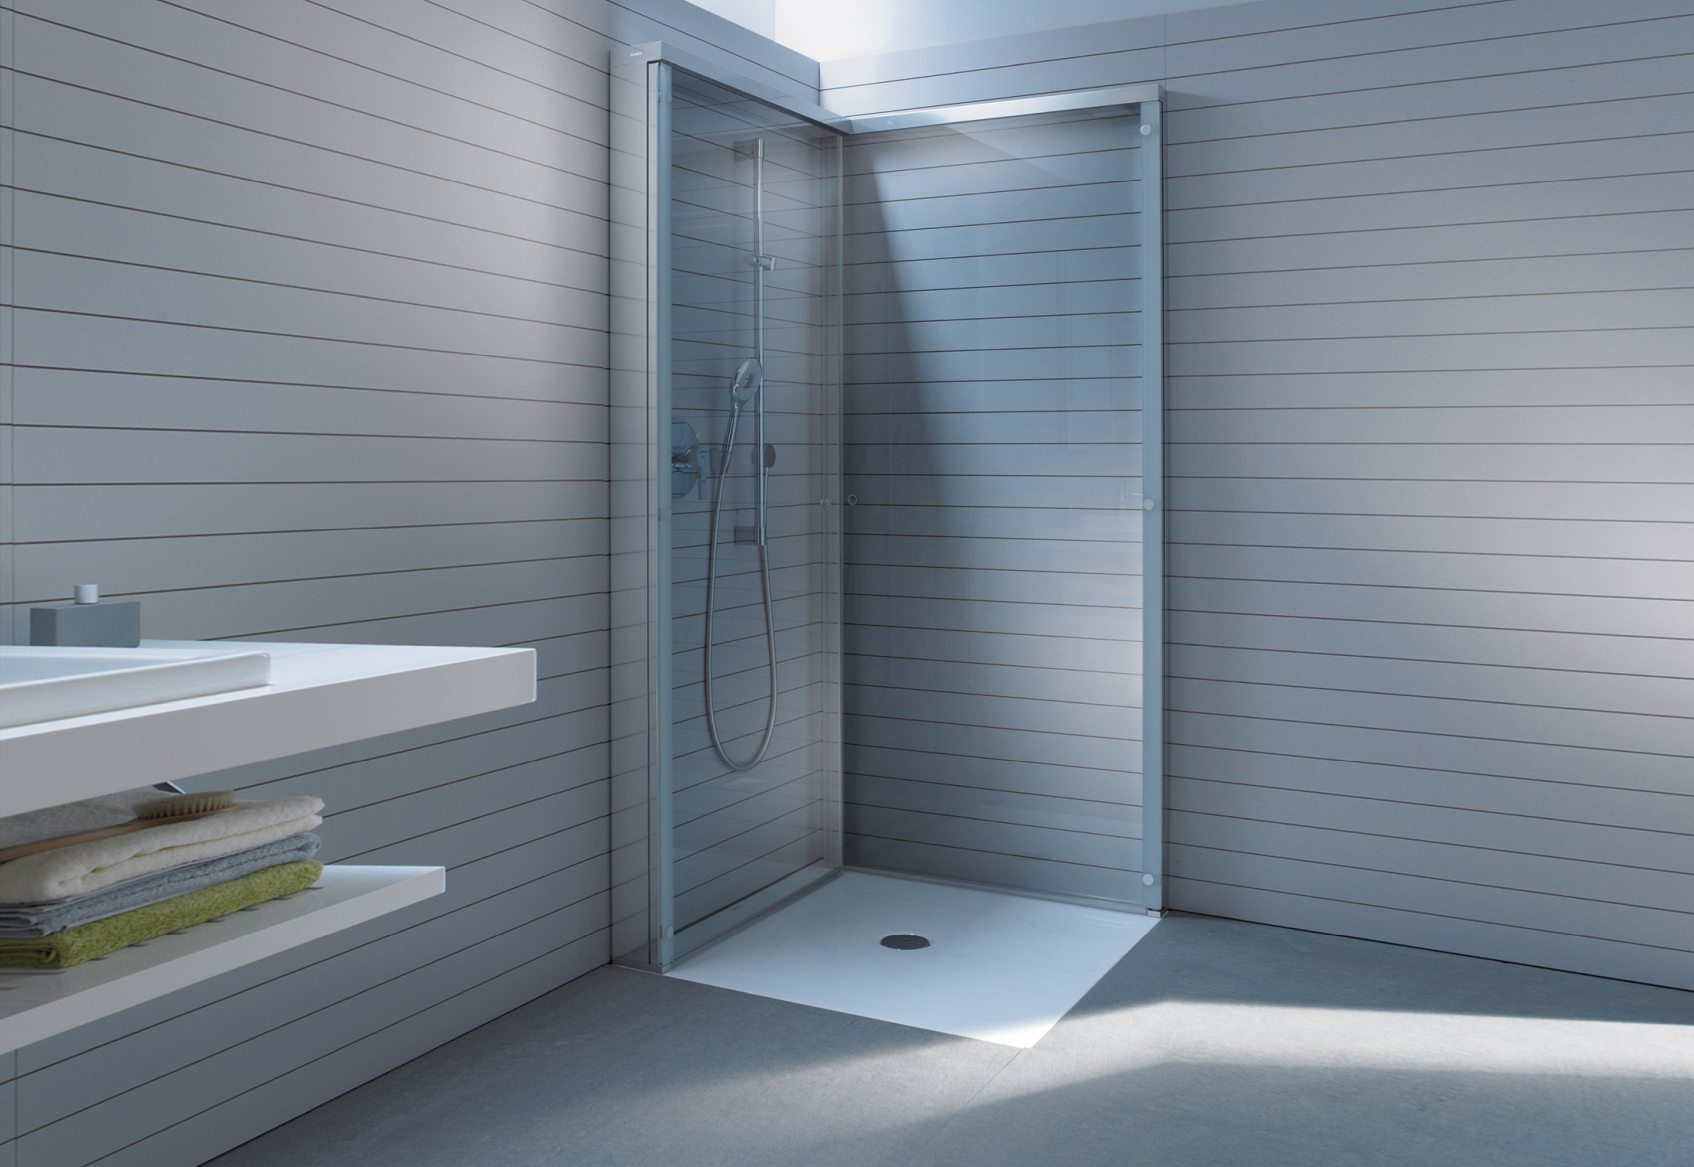 Duravit OpenSpace – mała łazienka – kabina prysznicowa kwadratowa/ kabina prysznicowa prostokątna/kabina składana – łazienka z prysznicem – lazienkarium.pl – opinie, aranżacje, inspiracje, sklep